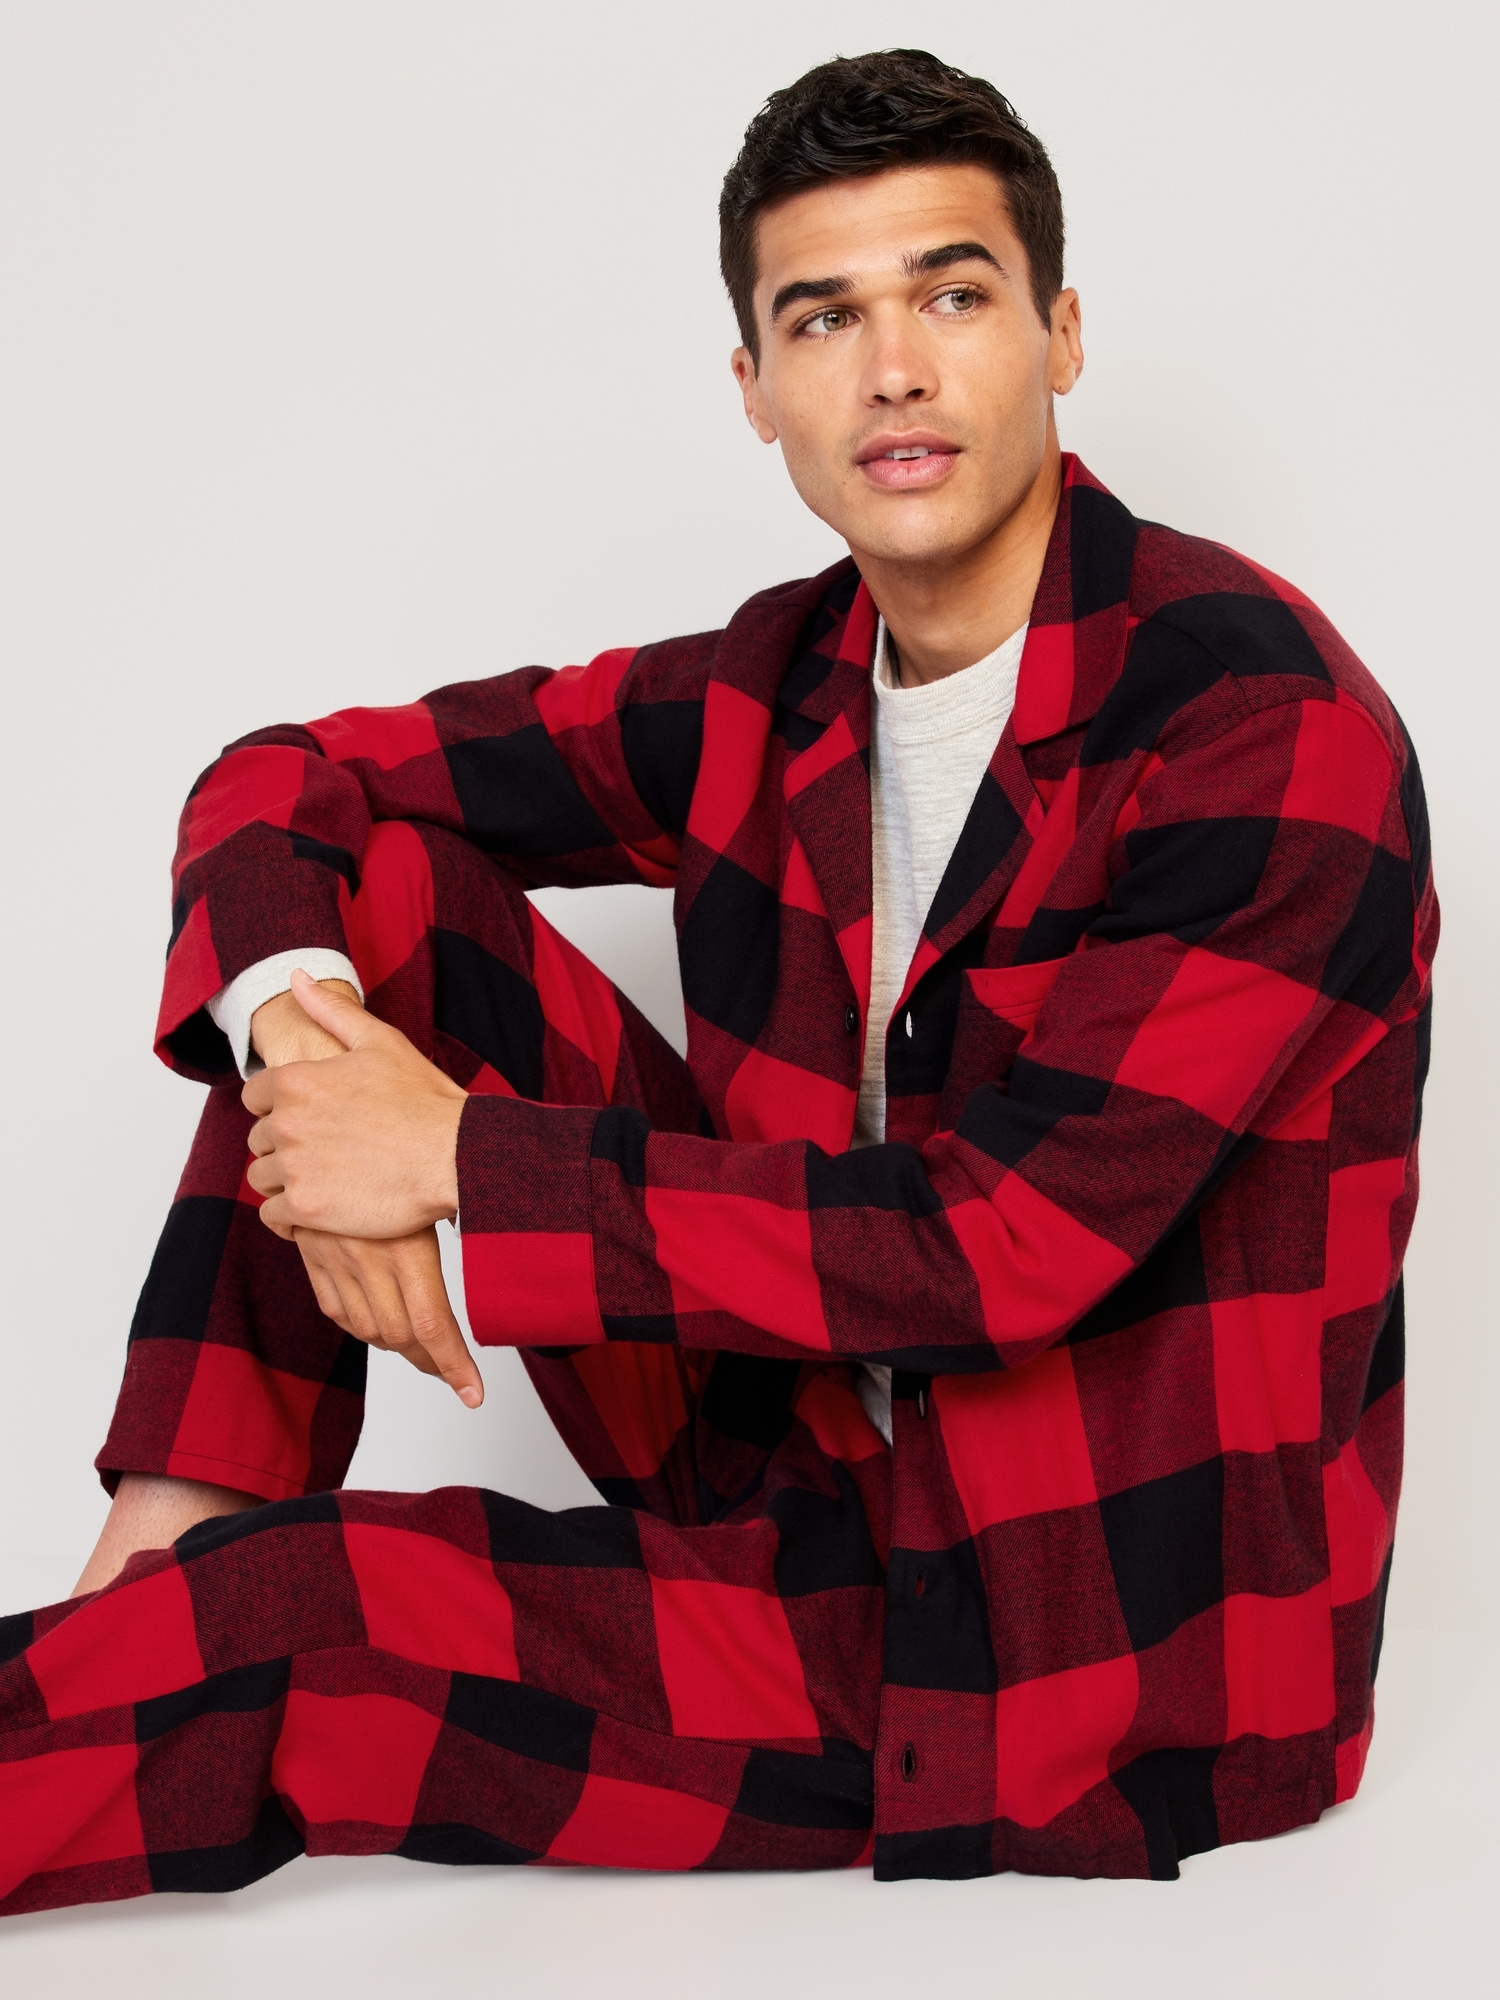 Men's Side Seamless Flannel Pajamas, Pajamas & Loungewear